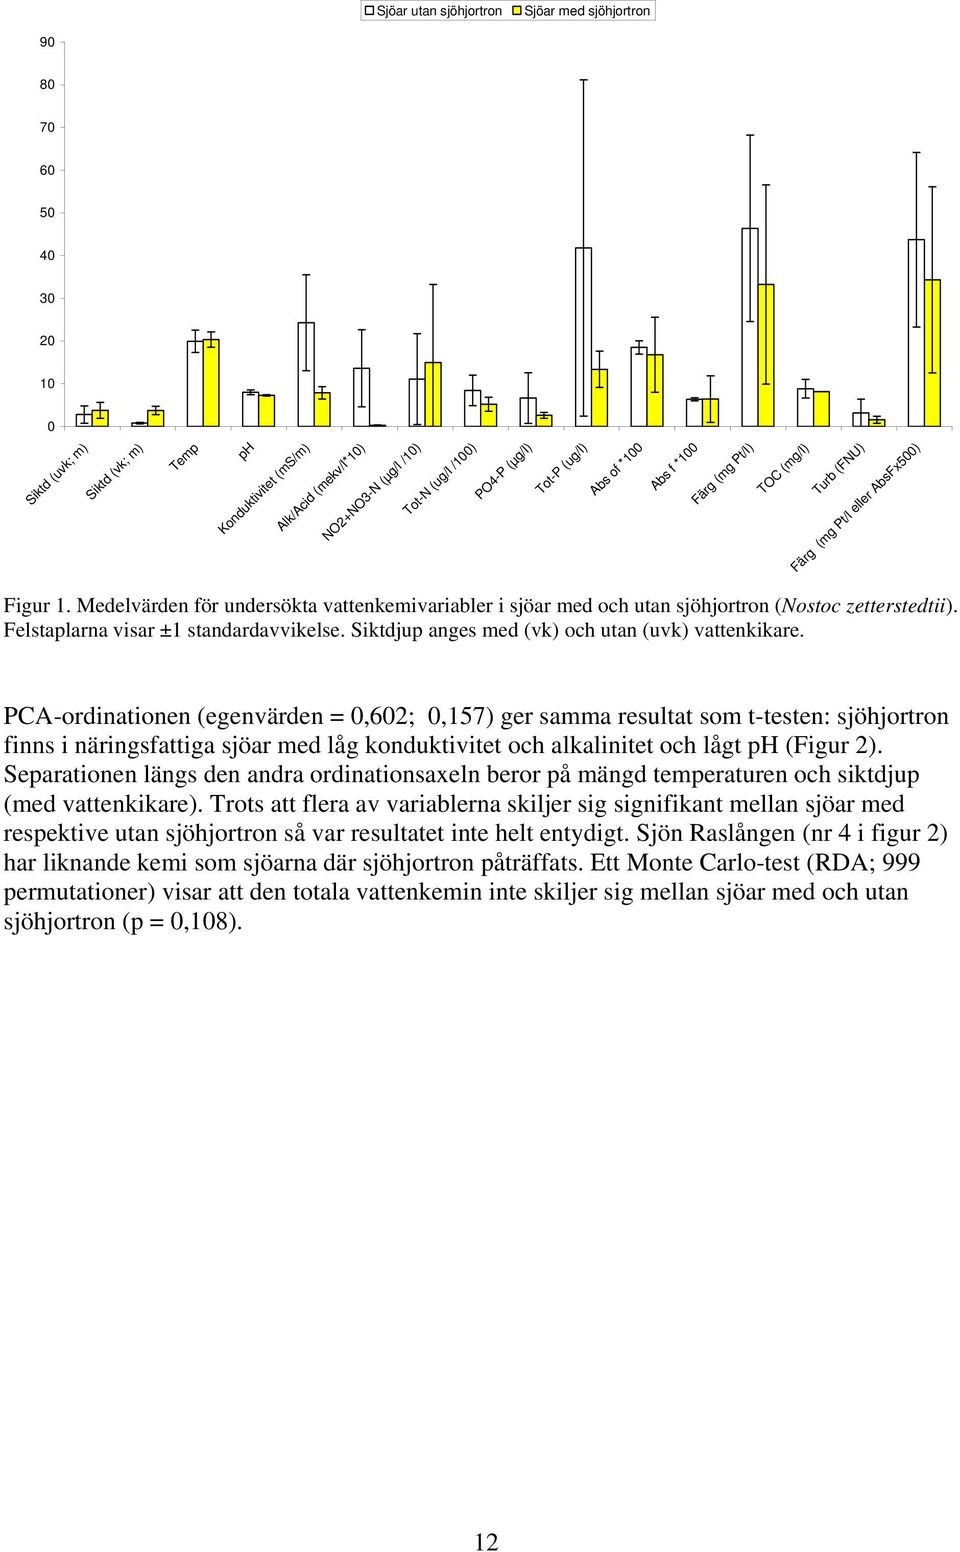 Medelvärden för undersökta vattenkemivariabler i sjöar med och utan sjöhjortron (Nostoc zetterstedtii). Felstaplarna visar ±1 standardavvikelse. Siktdjup anges med (vk) och utan (uvk) vattenkikare.